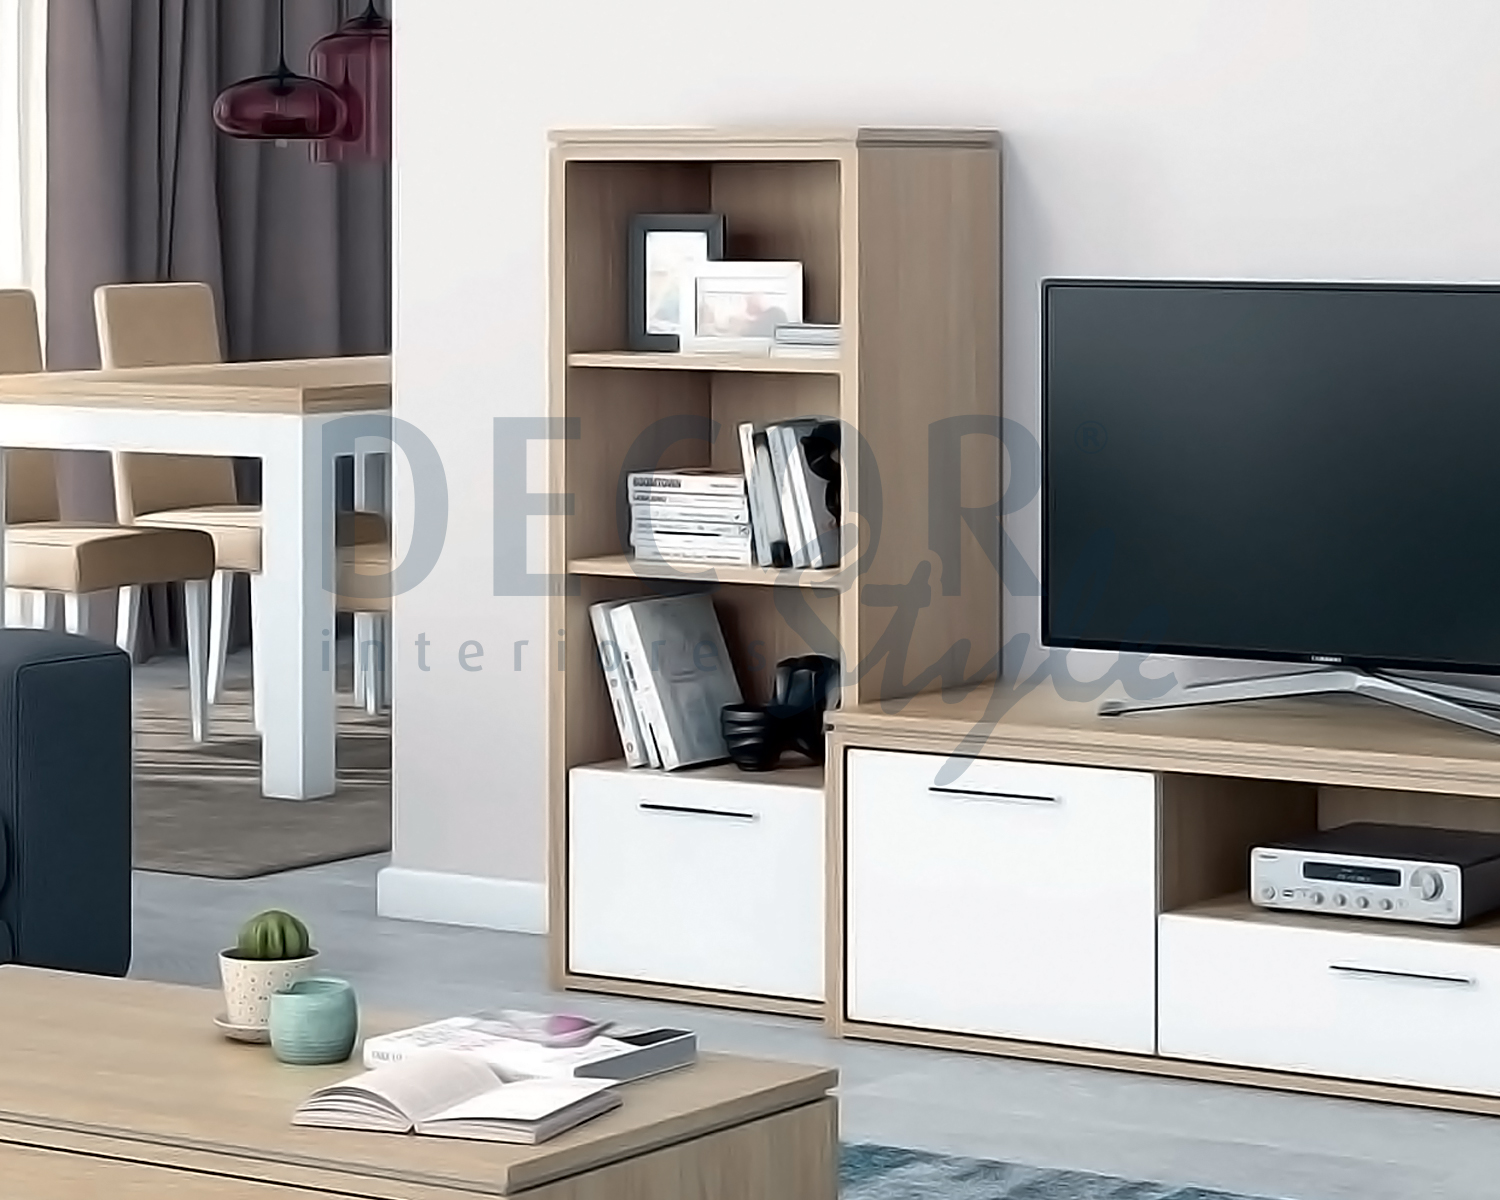 estante rossio lisboa moderna elegante e simples minimalista em madeira carvalho natural ou cinza com branco